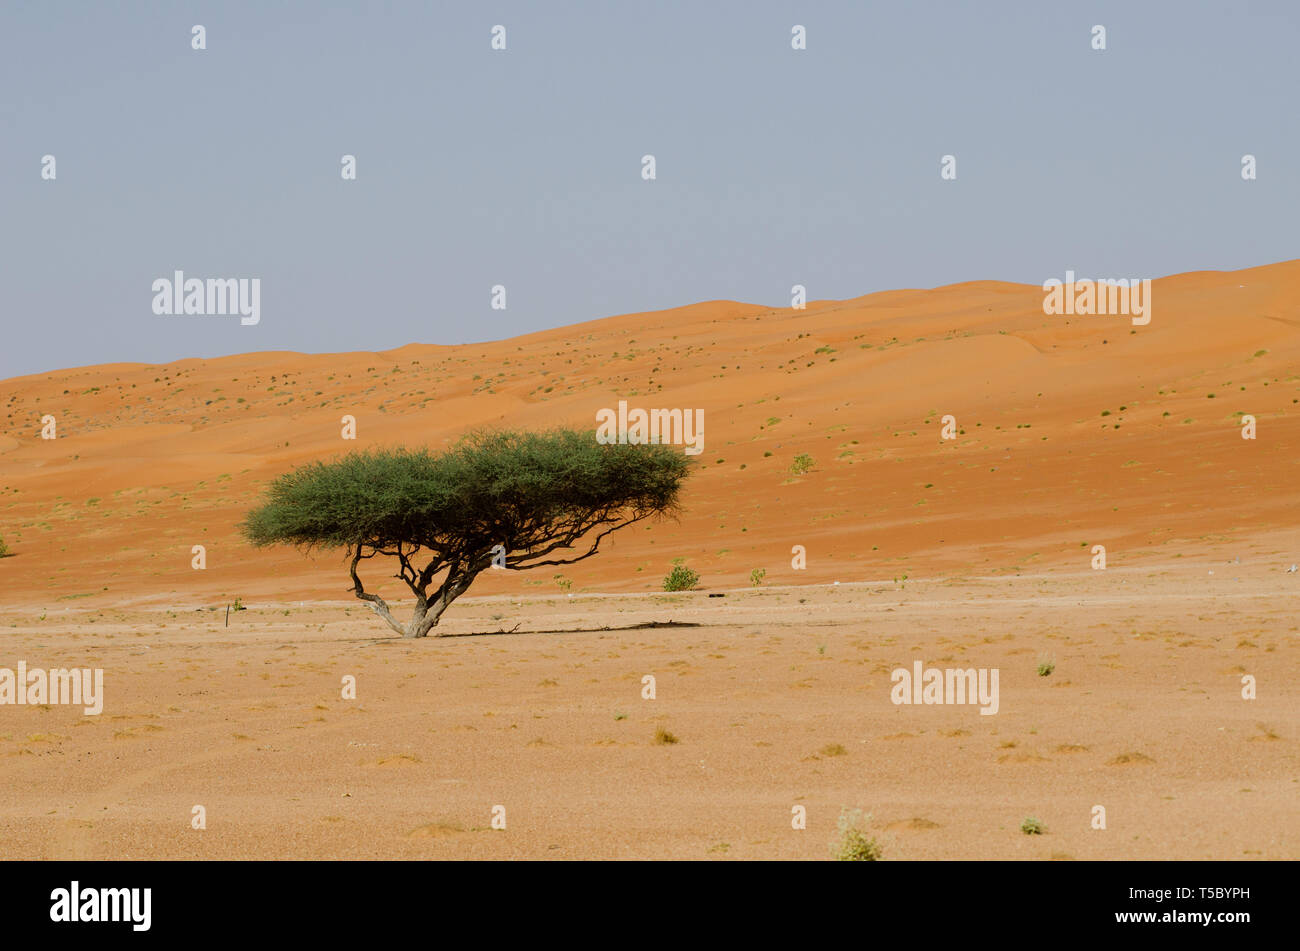 A single tree alone in the Omani Desert Stock Photo